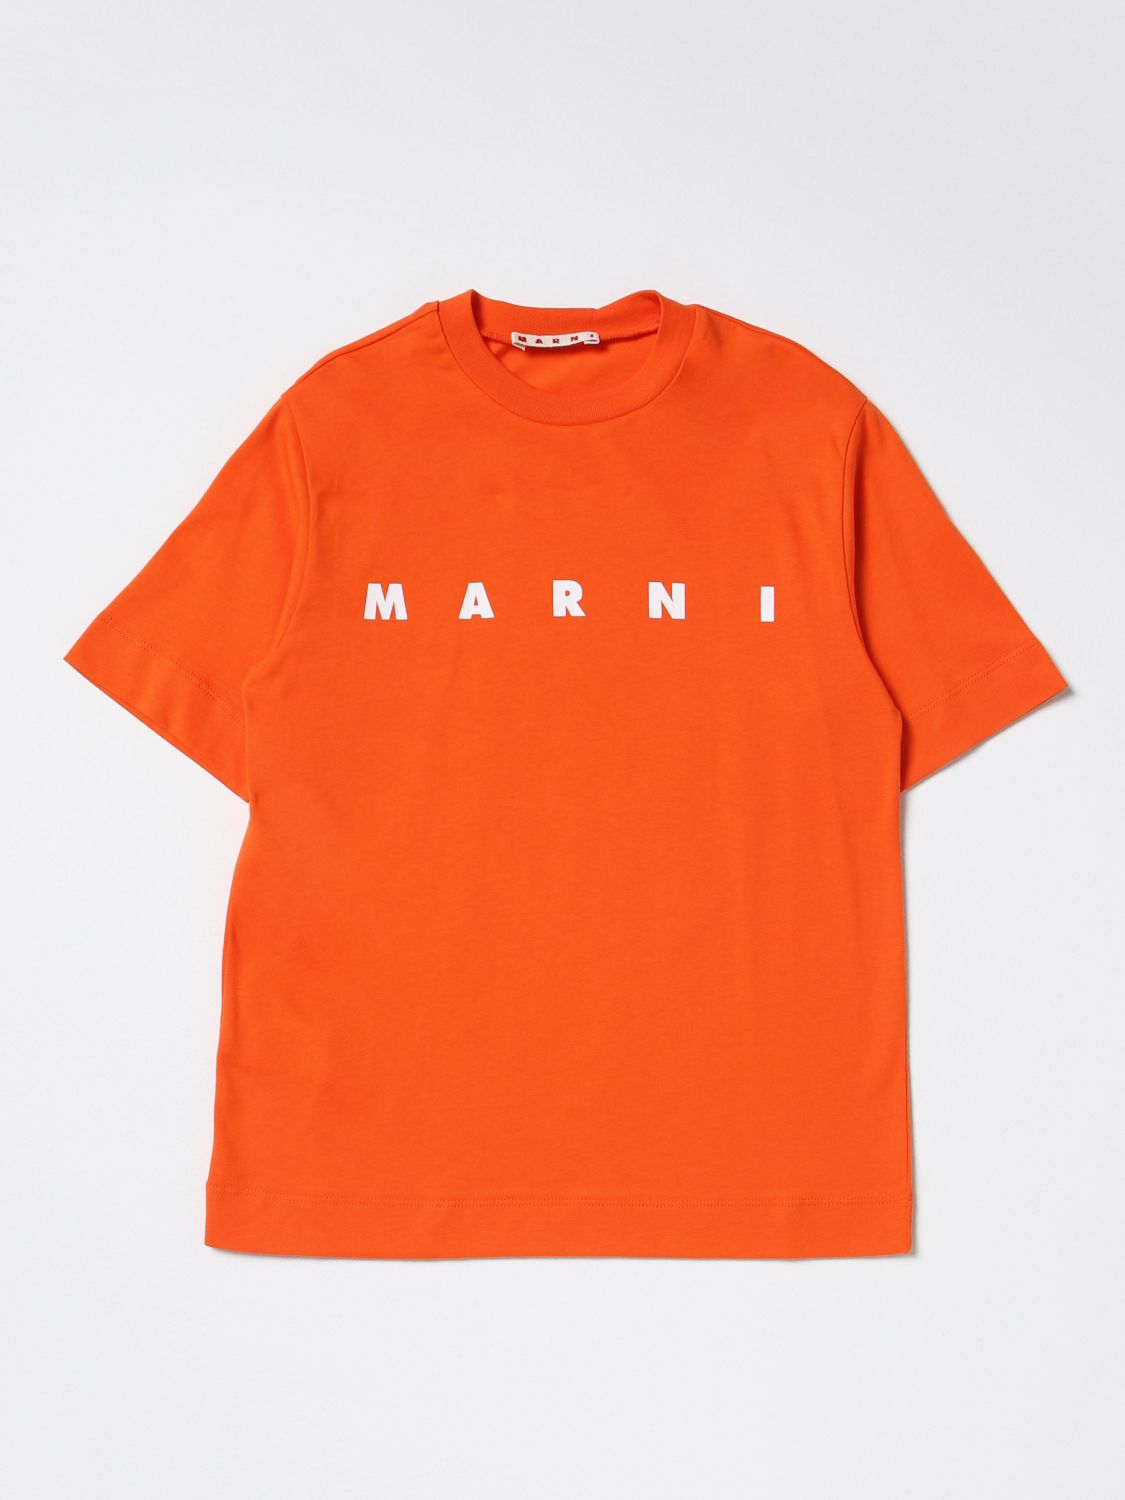 MARNI: cotton T-shirt with logo - Orange | Marni t-shirt M002MVM00HZ ...